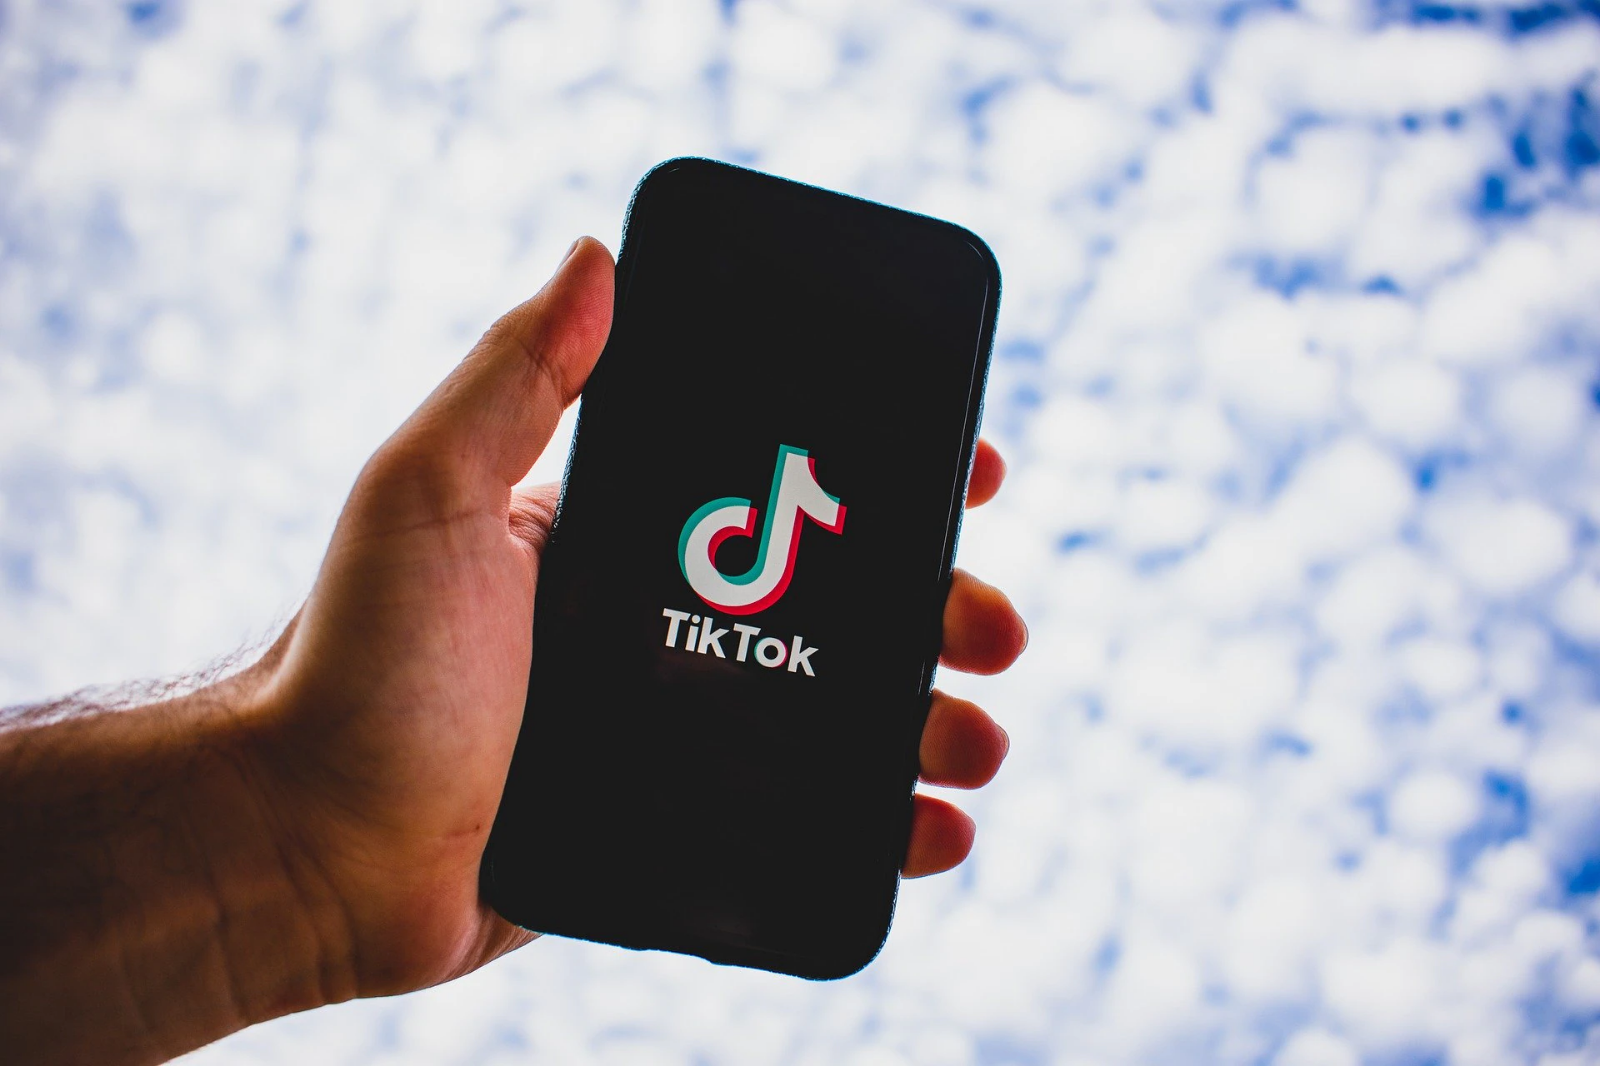 Ẩn hoạ từ TikTok: Tự động thu thập dữ liệu người dùng